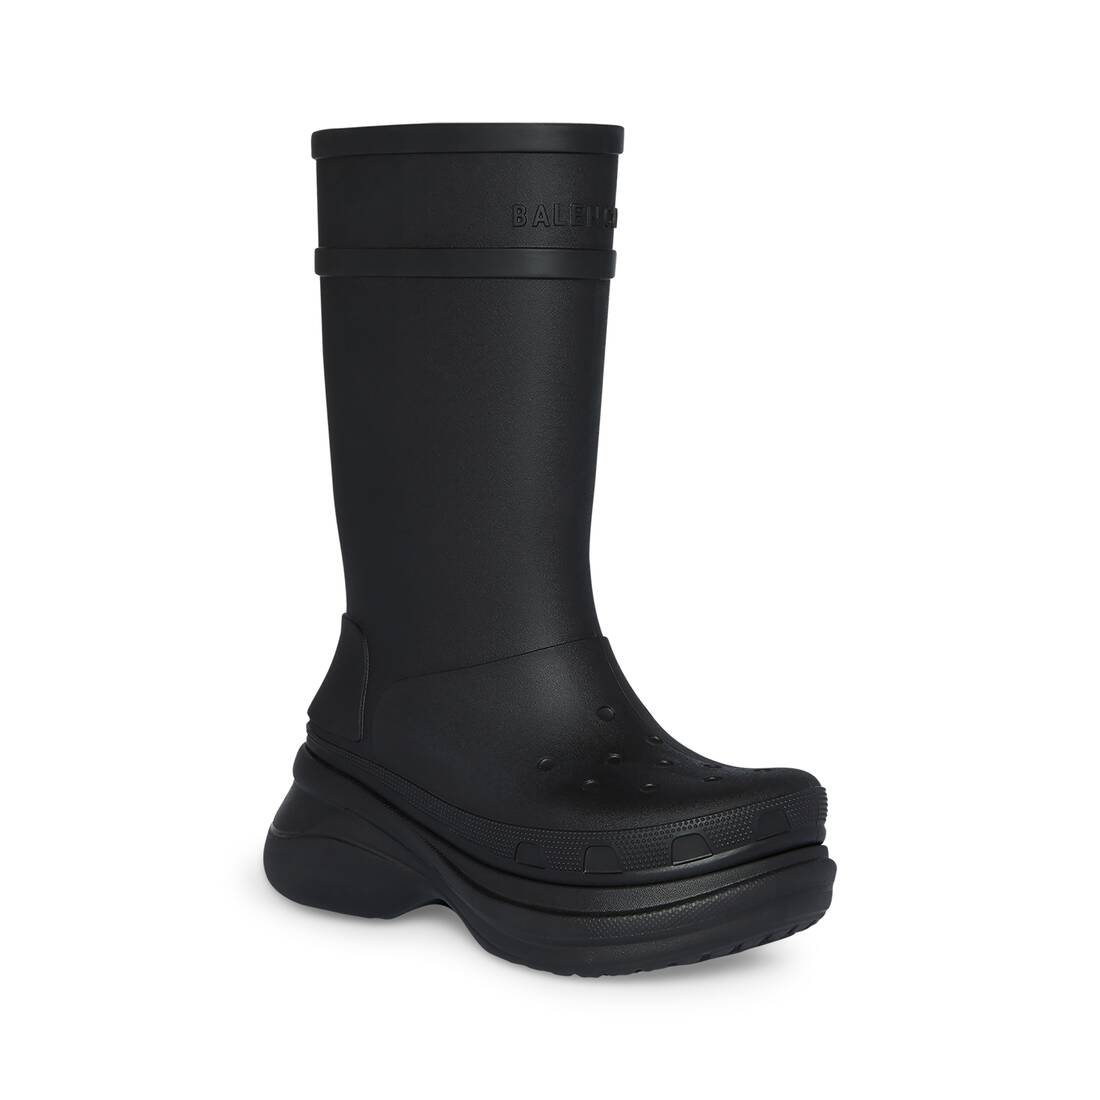 Men's Crocs™ Boot in Black